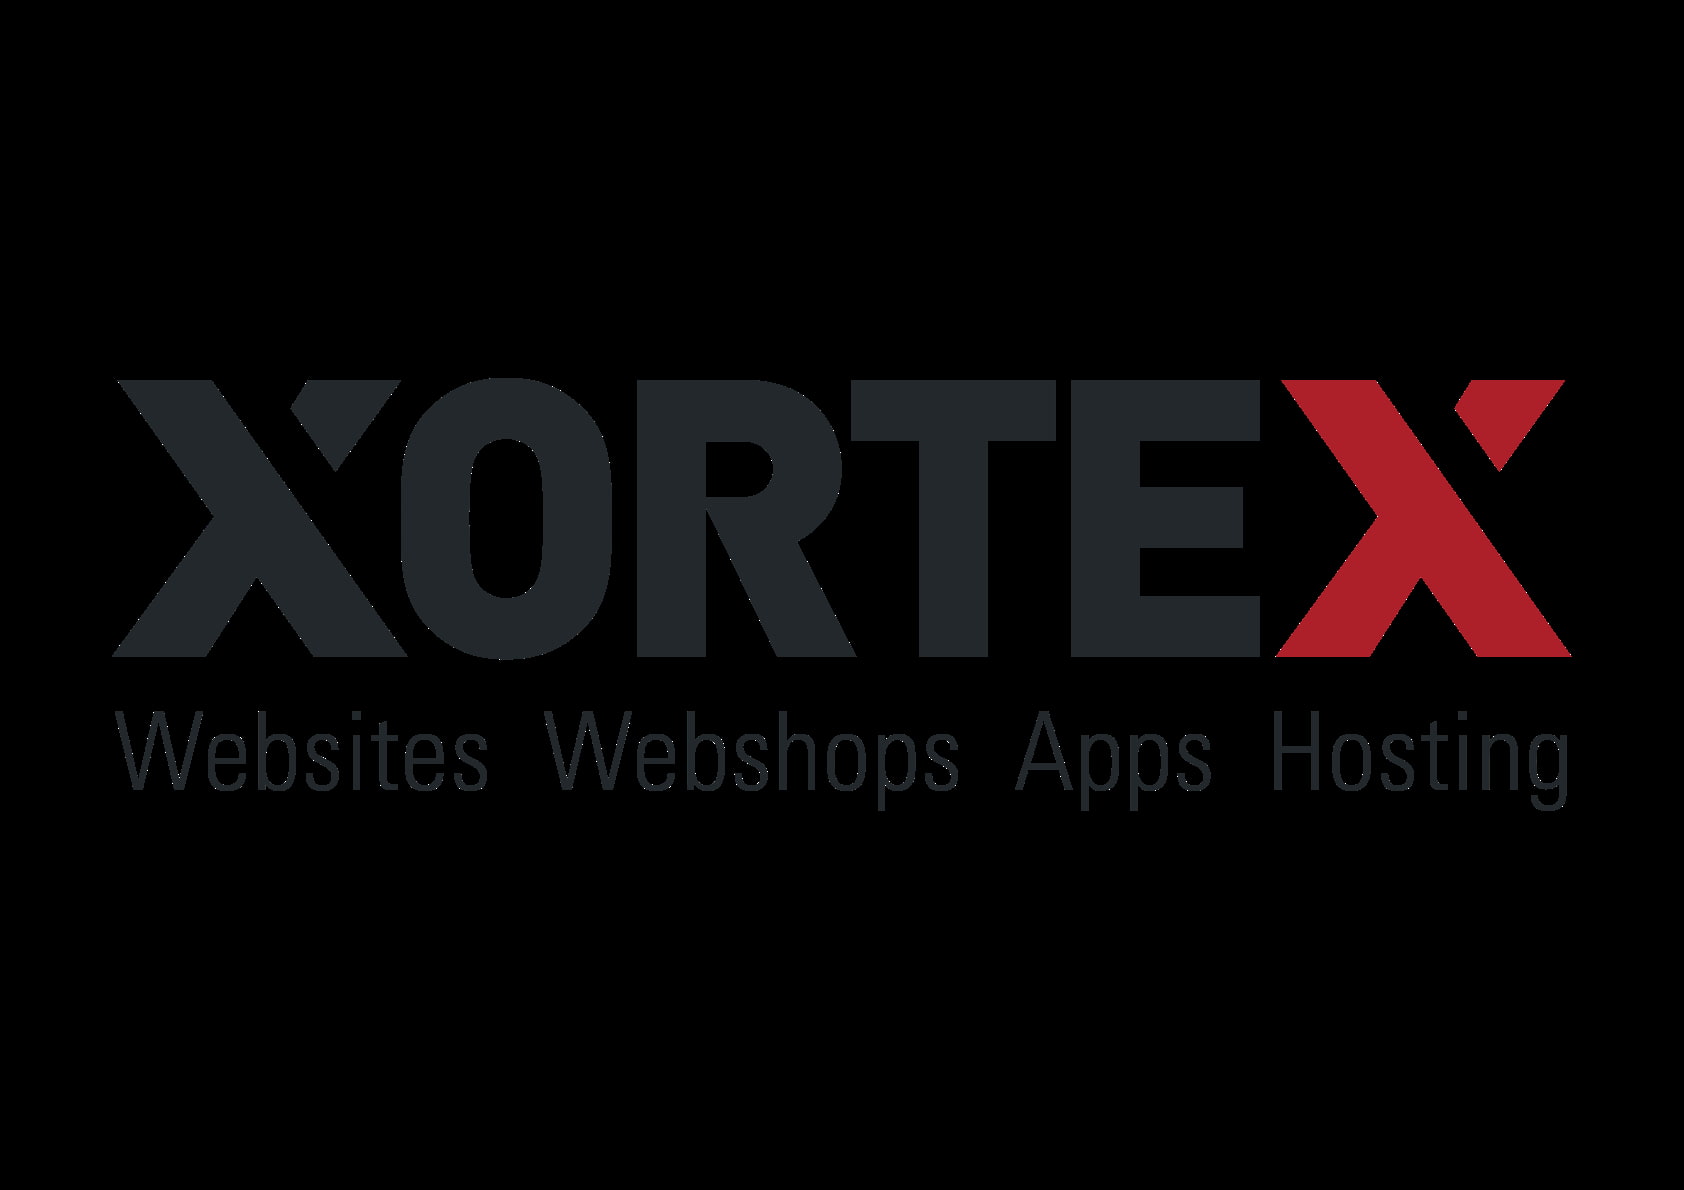 XORTEX wieder eigenständig